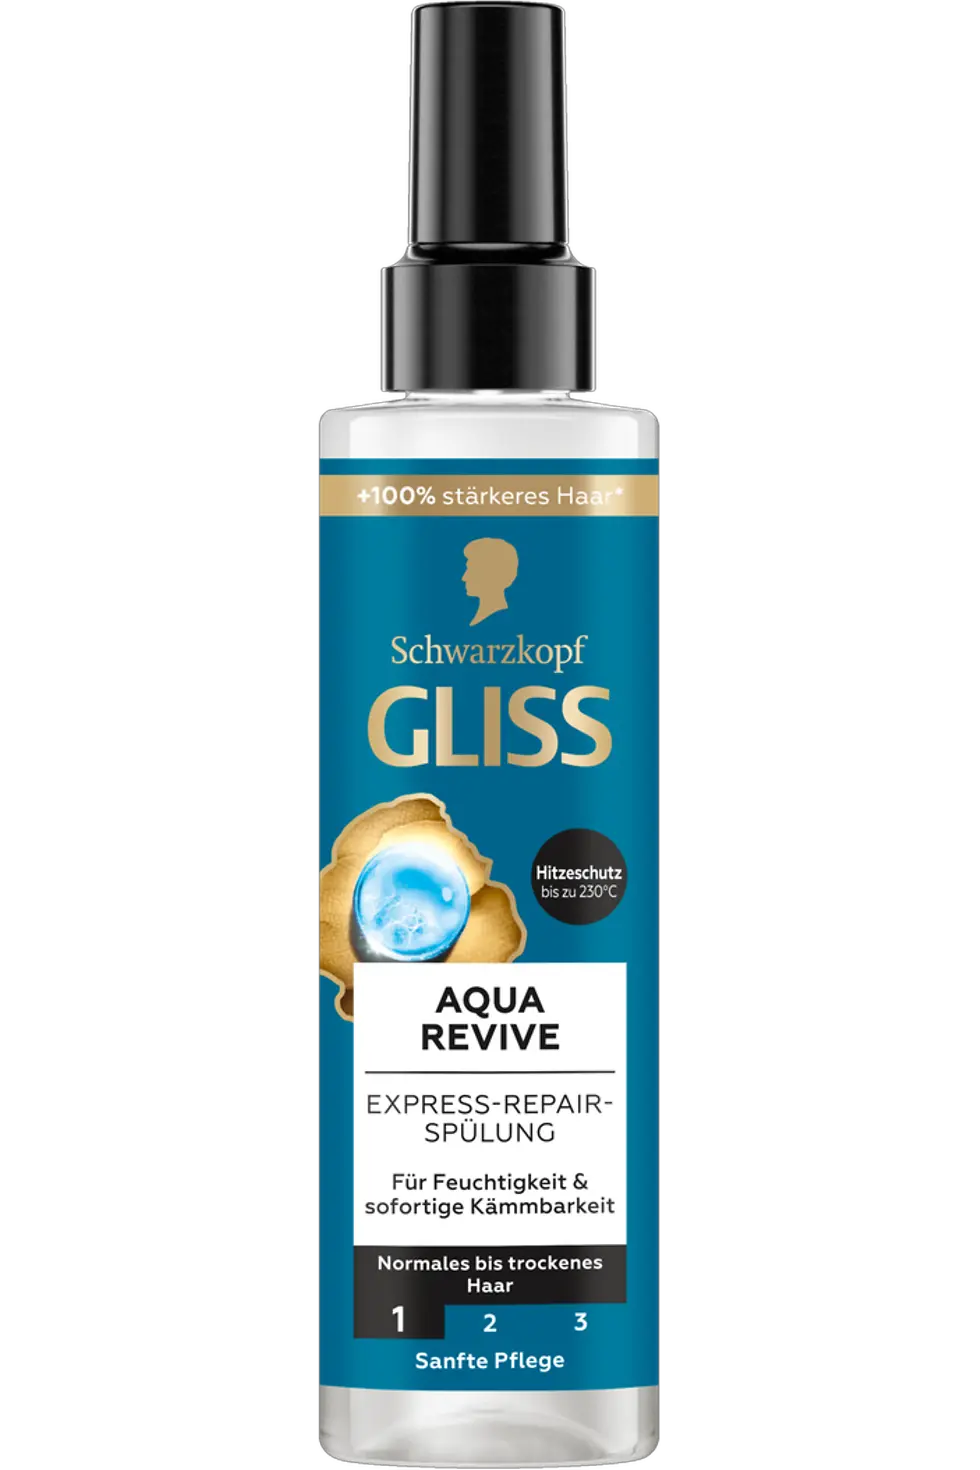 
Gliss Aqua Revive Express-Repair-Spülung